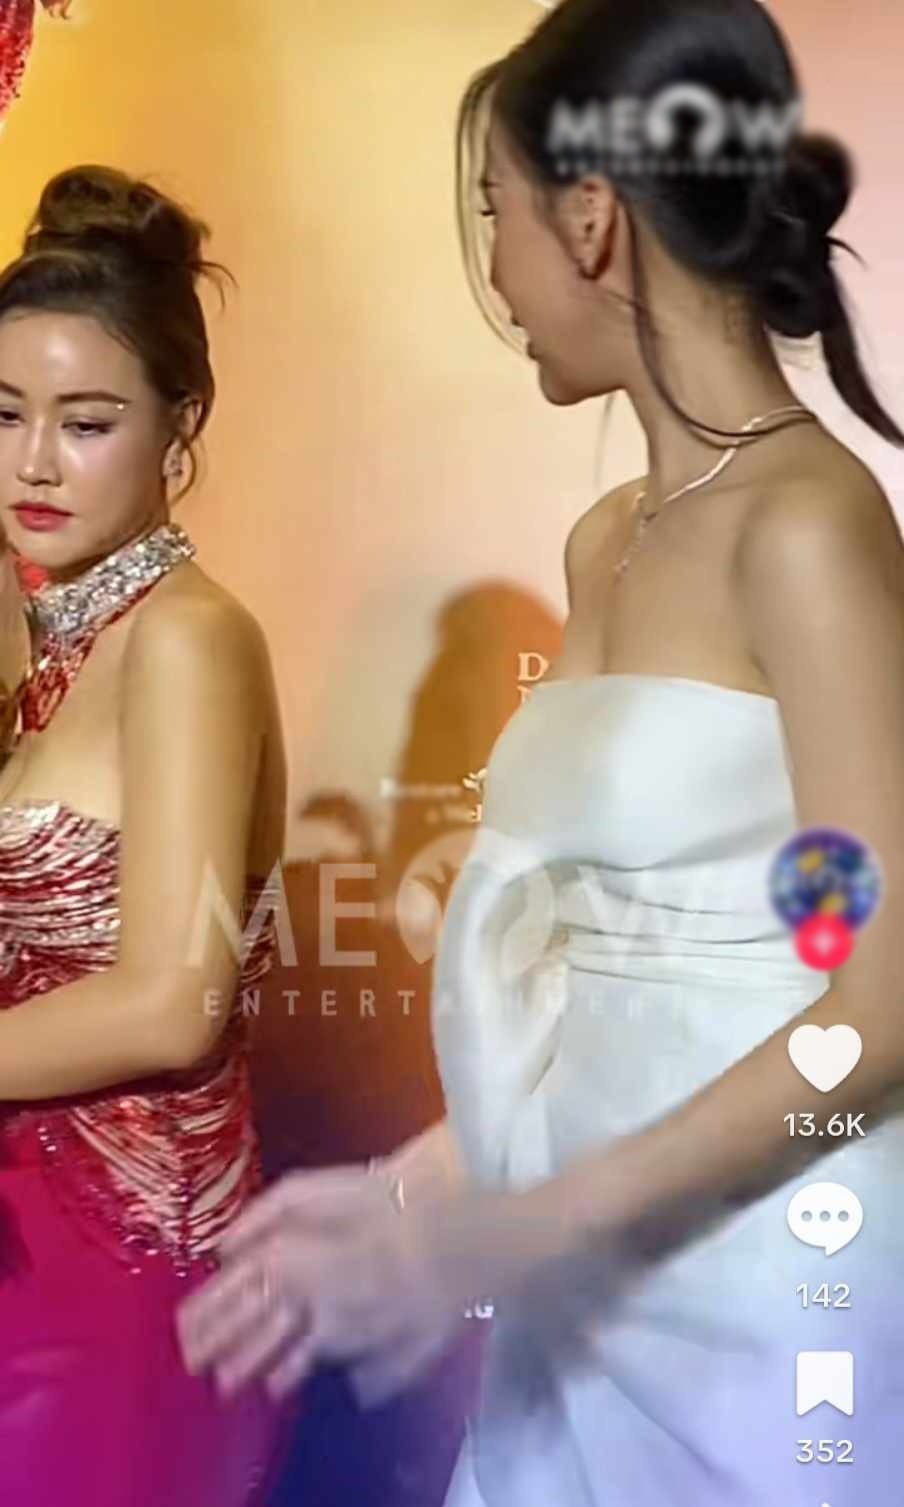 Bị đàn chị "lơ đẹp" tại thảm đỏ, Miss Universe Việt Nam đương nhiệm nói gì? - 1